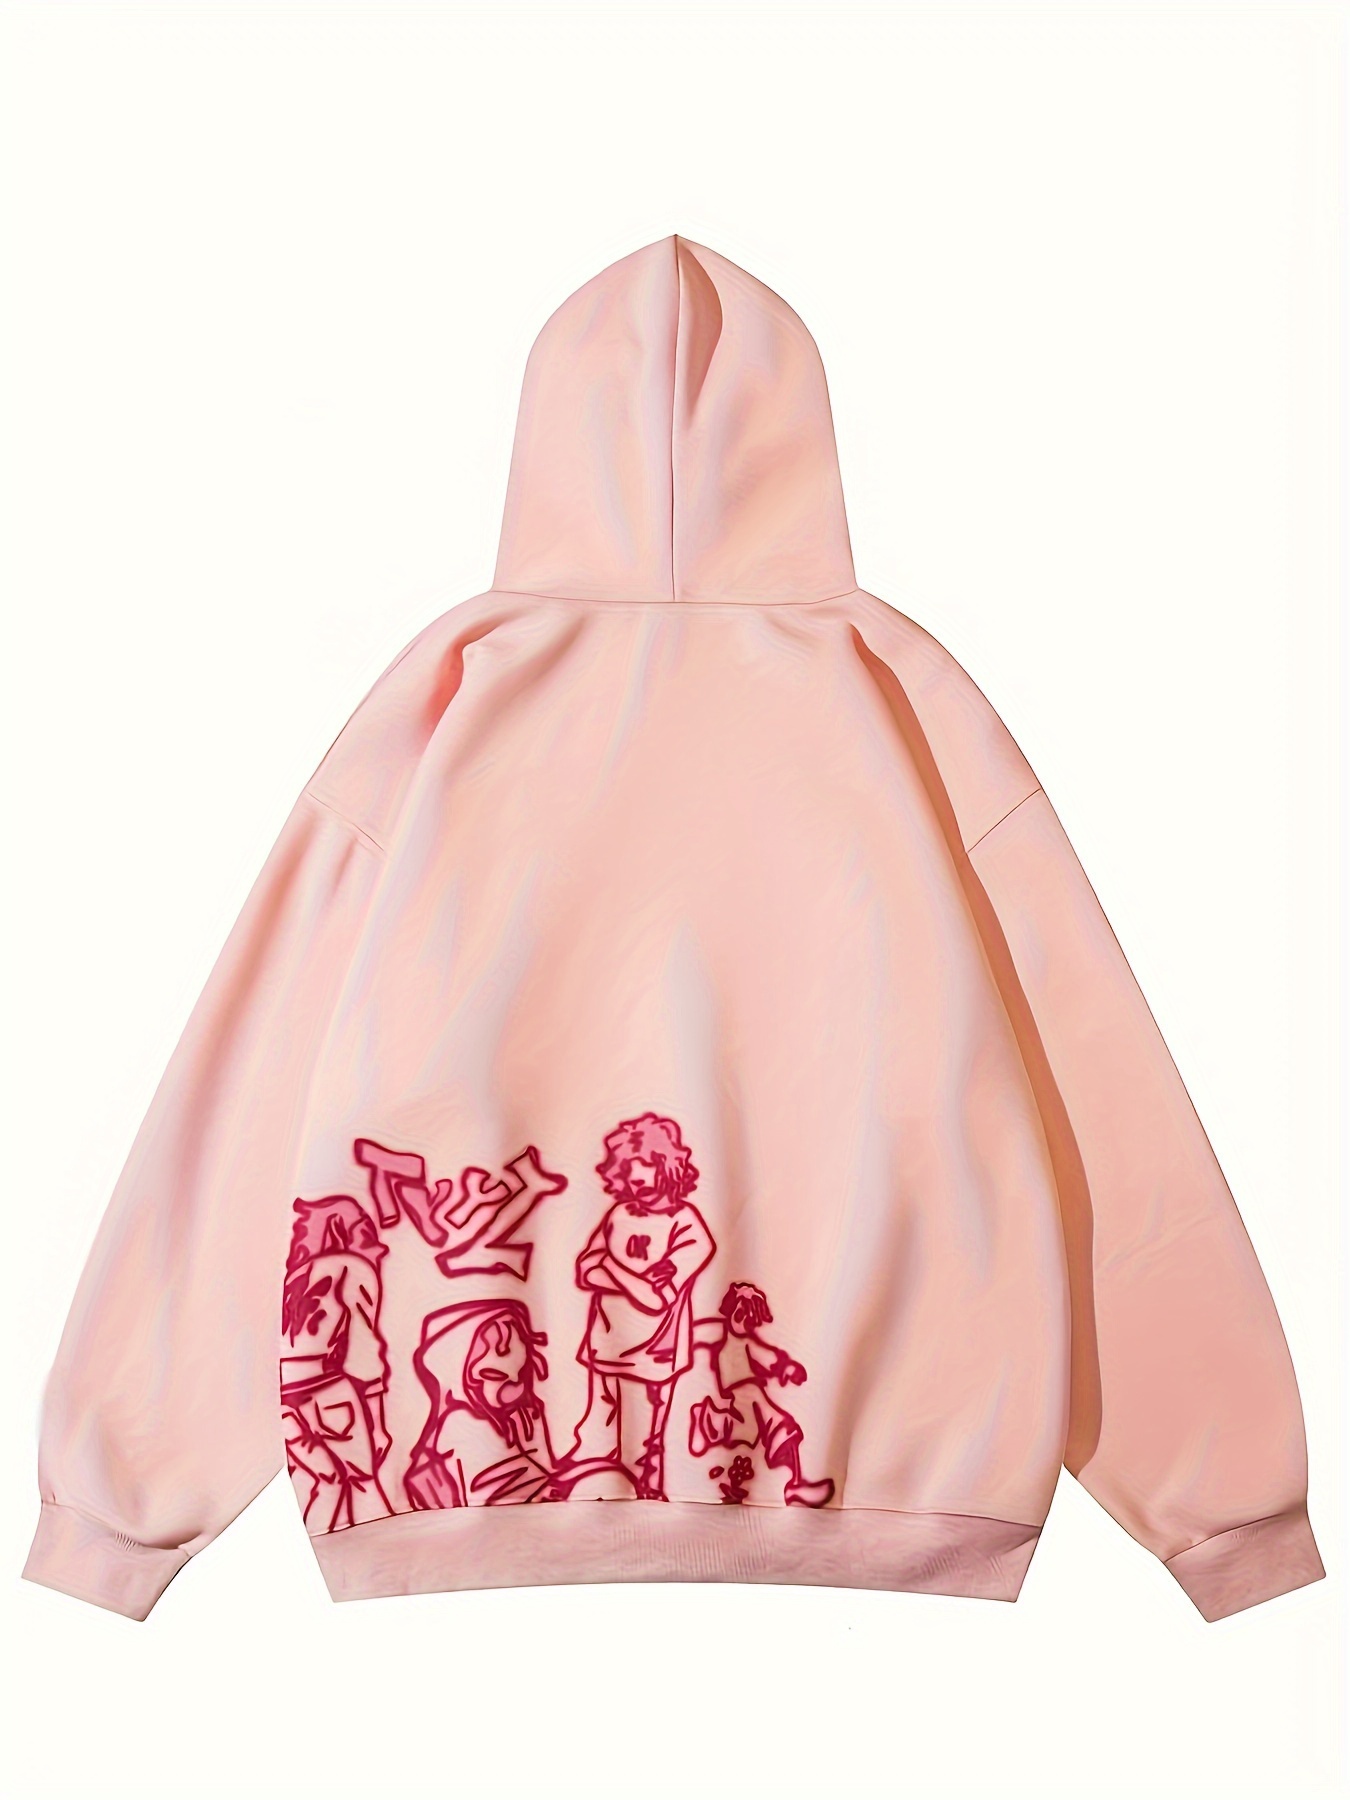 Women's Pink Hoodies & Sweatshirts